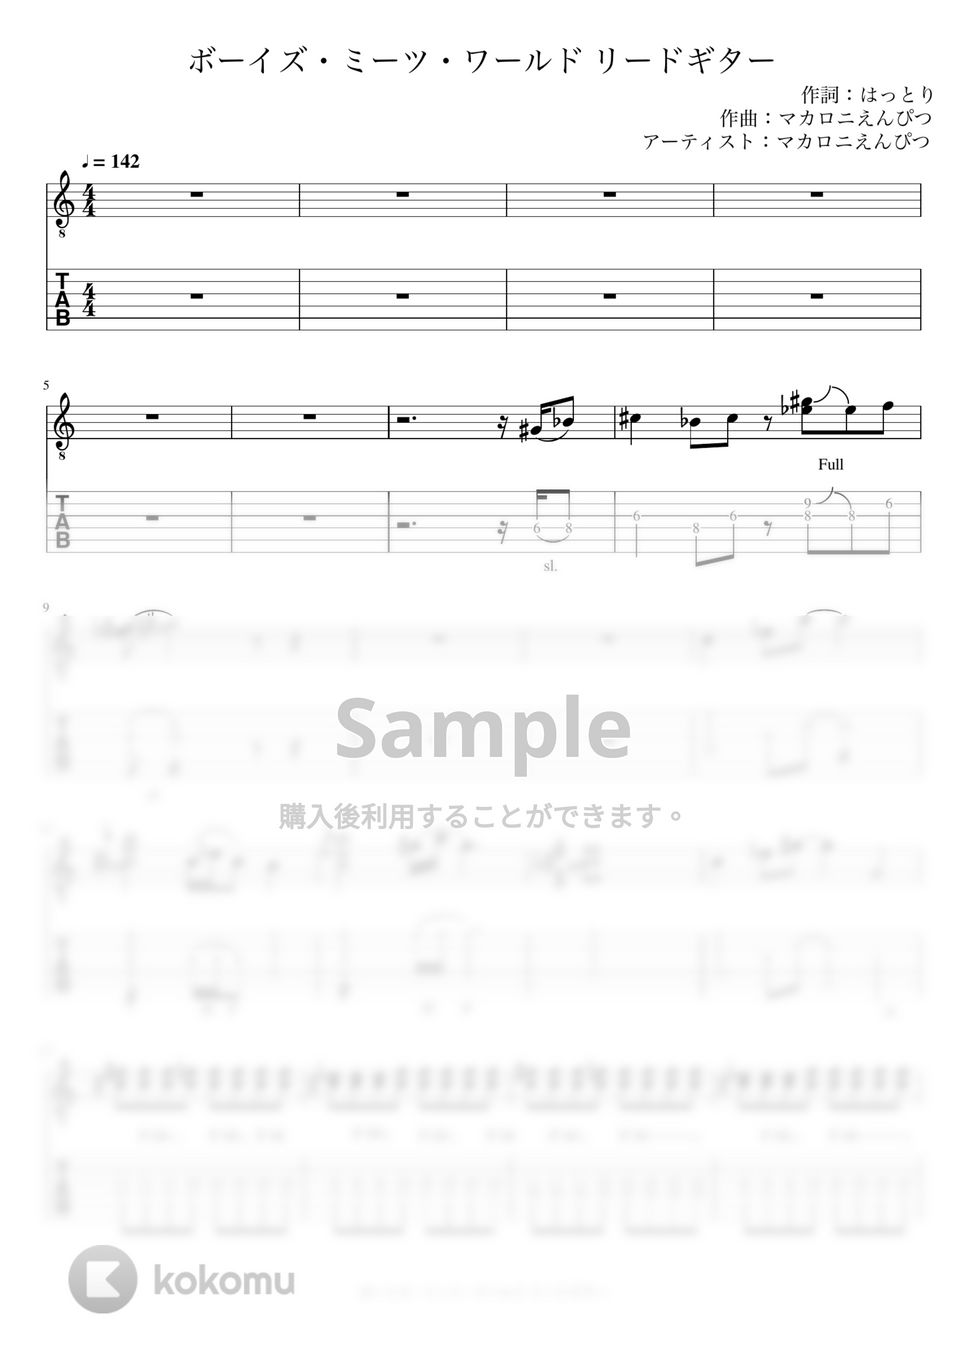 マカロニえんぴつ - ボーイズ・ミーツ・ワールド (リードギター) by J-ROCKチャンネル